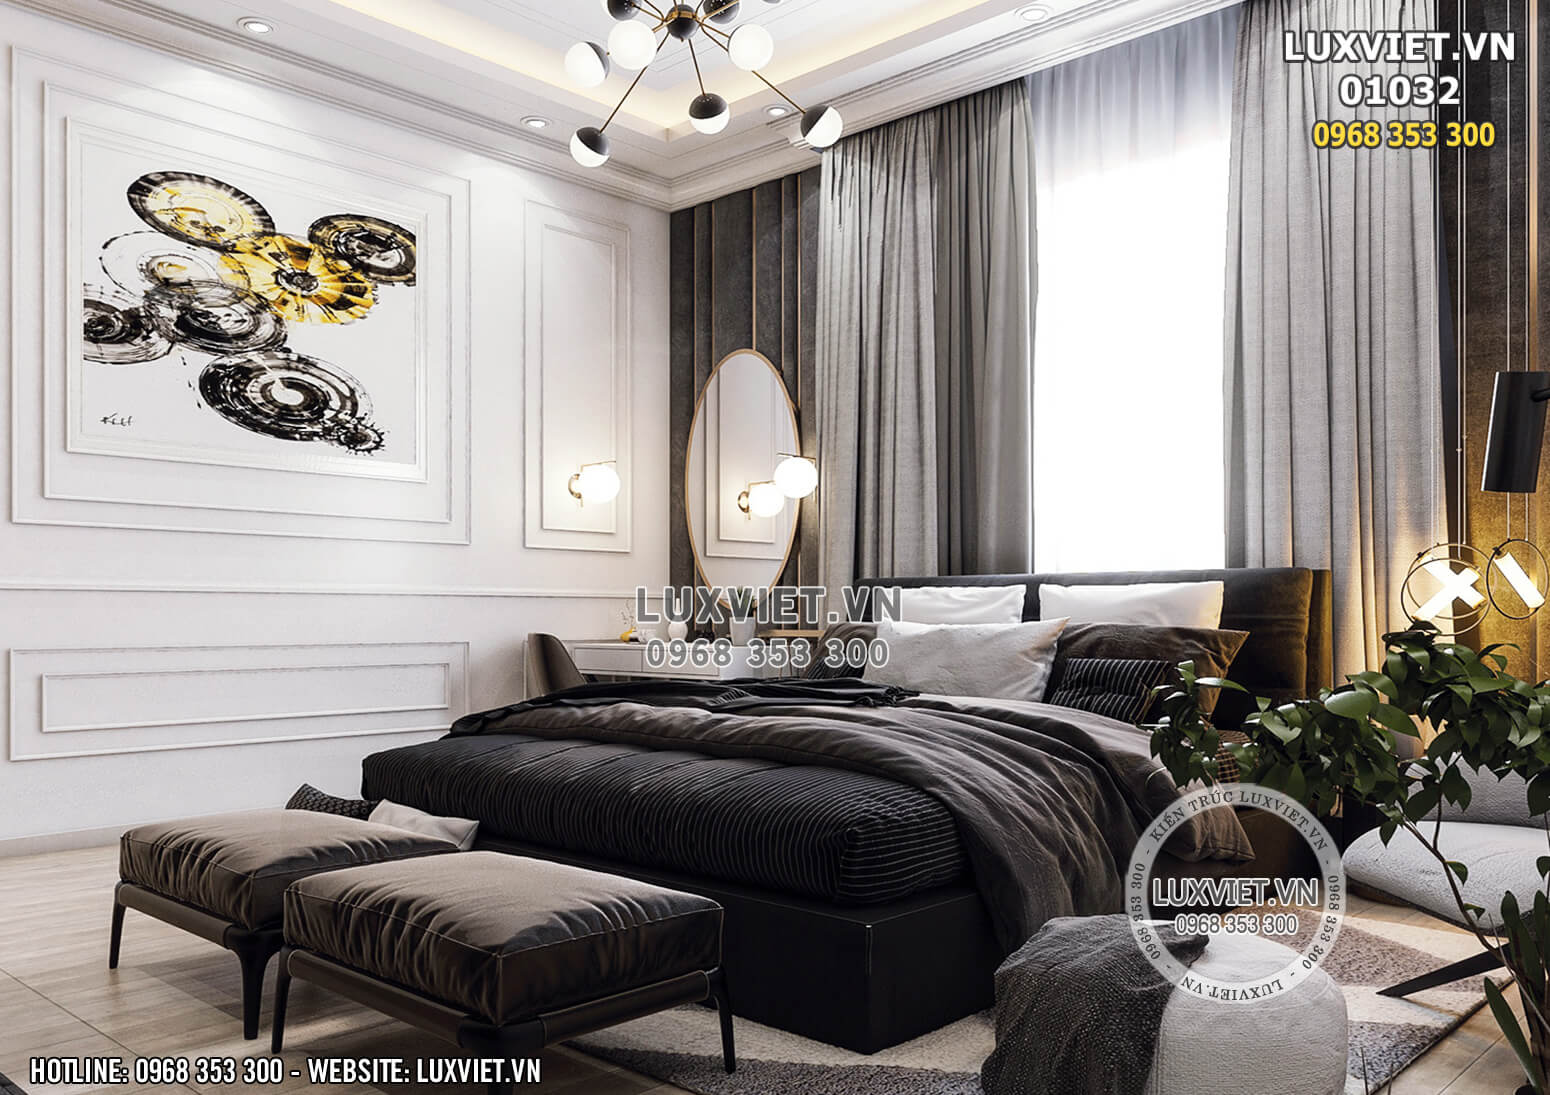 Hình ảnh: Phong cách phòng ngủ luxury tân cổ điển - LV -01032